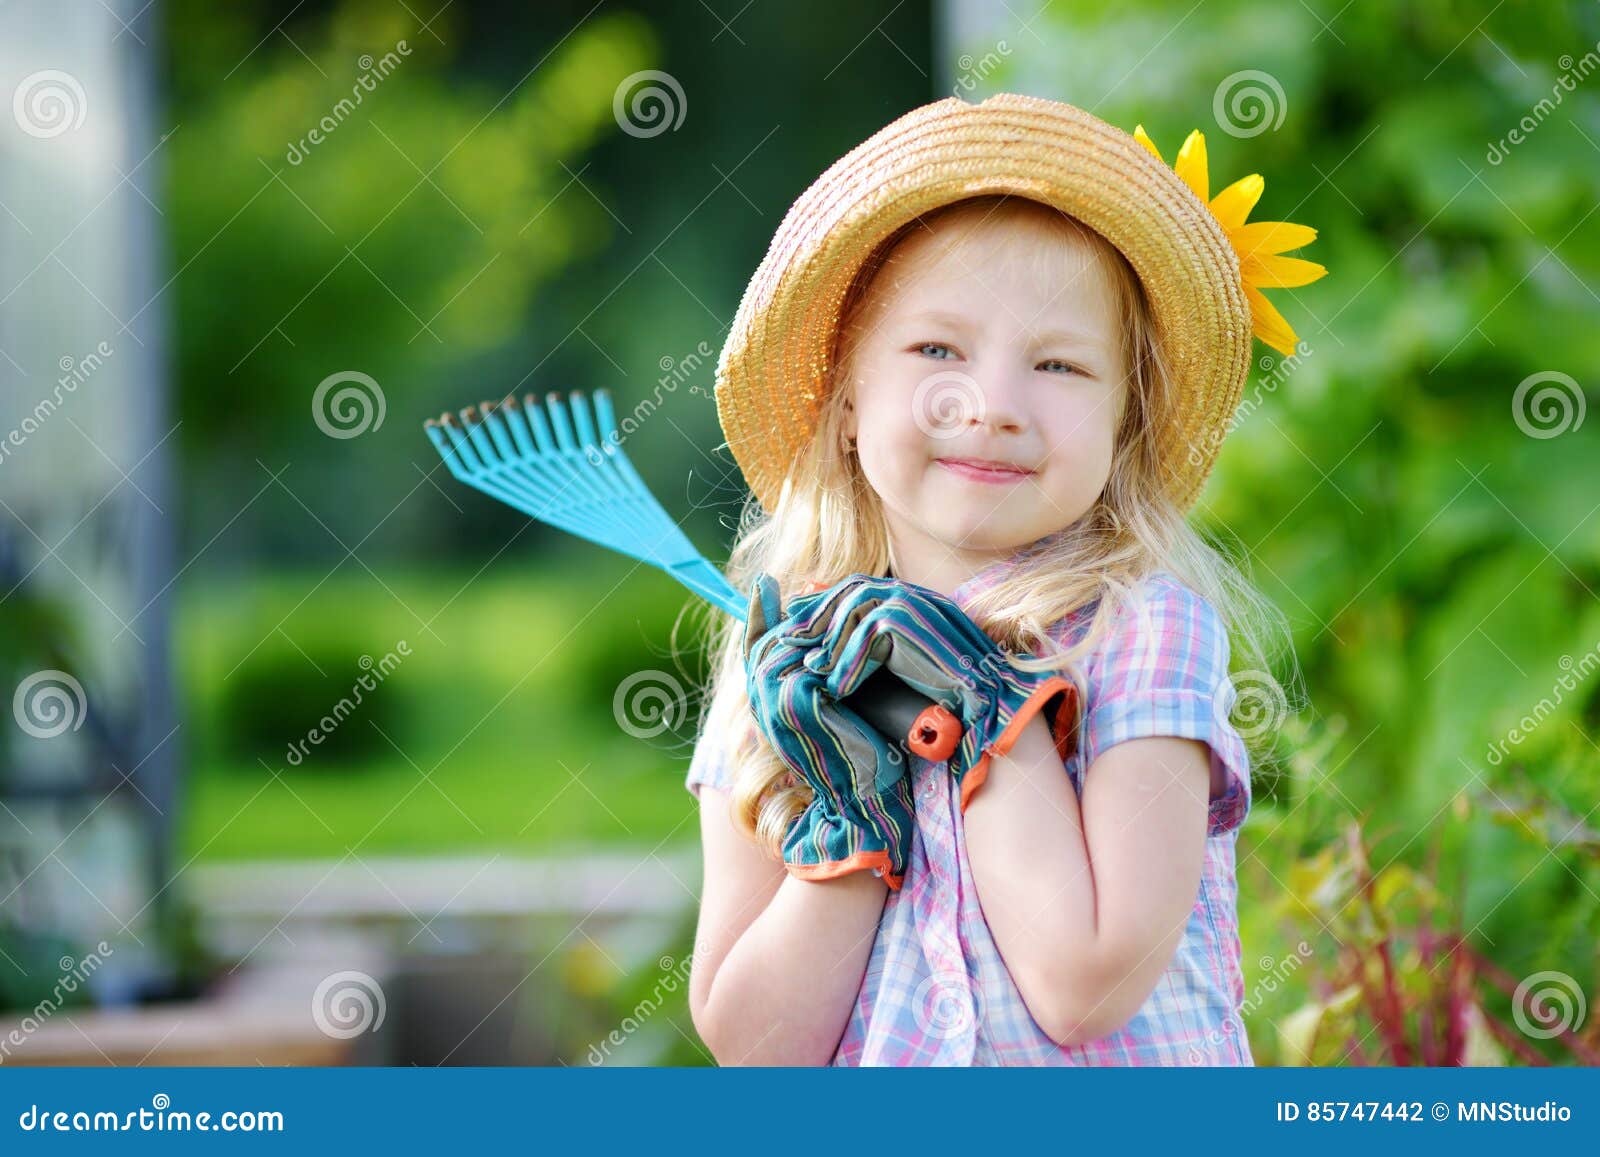 https://thumbs.dreamstime.com/z/sombrero-de-paja-de-la-ni%C3%B1a-adorable-y-guantes-del-jard%C3%ADn-de-los-ni%C3%B1os-que-llevan-que-juegan-con-sus-utensilios-de-jardiner%C3%ADa-85747442.jpg